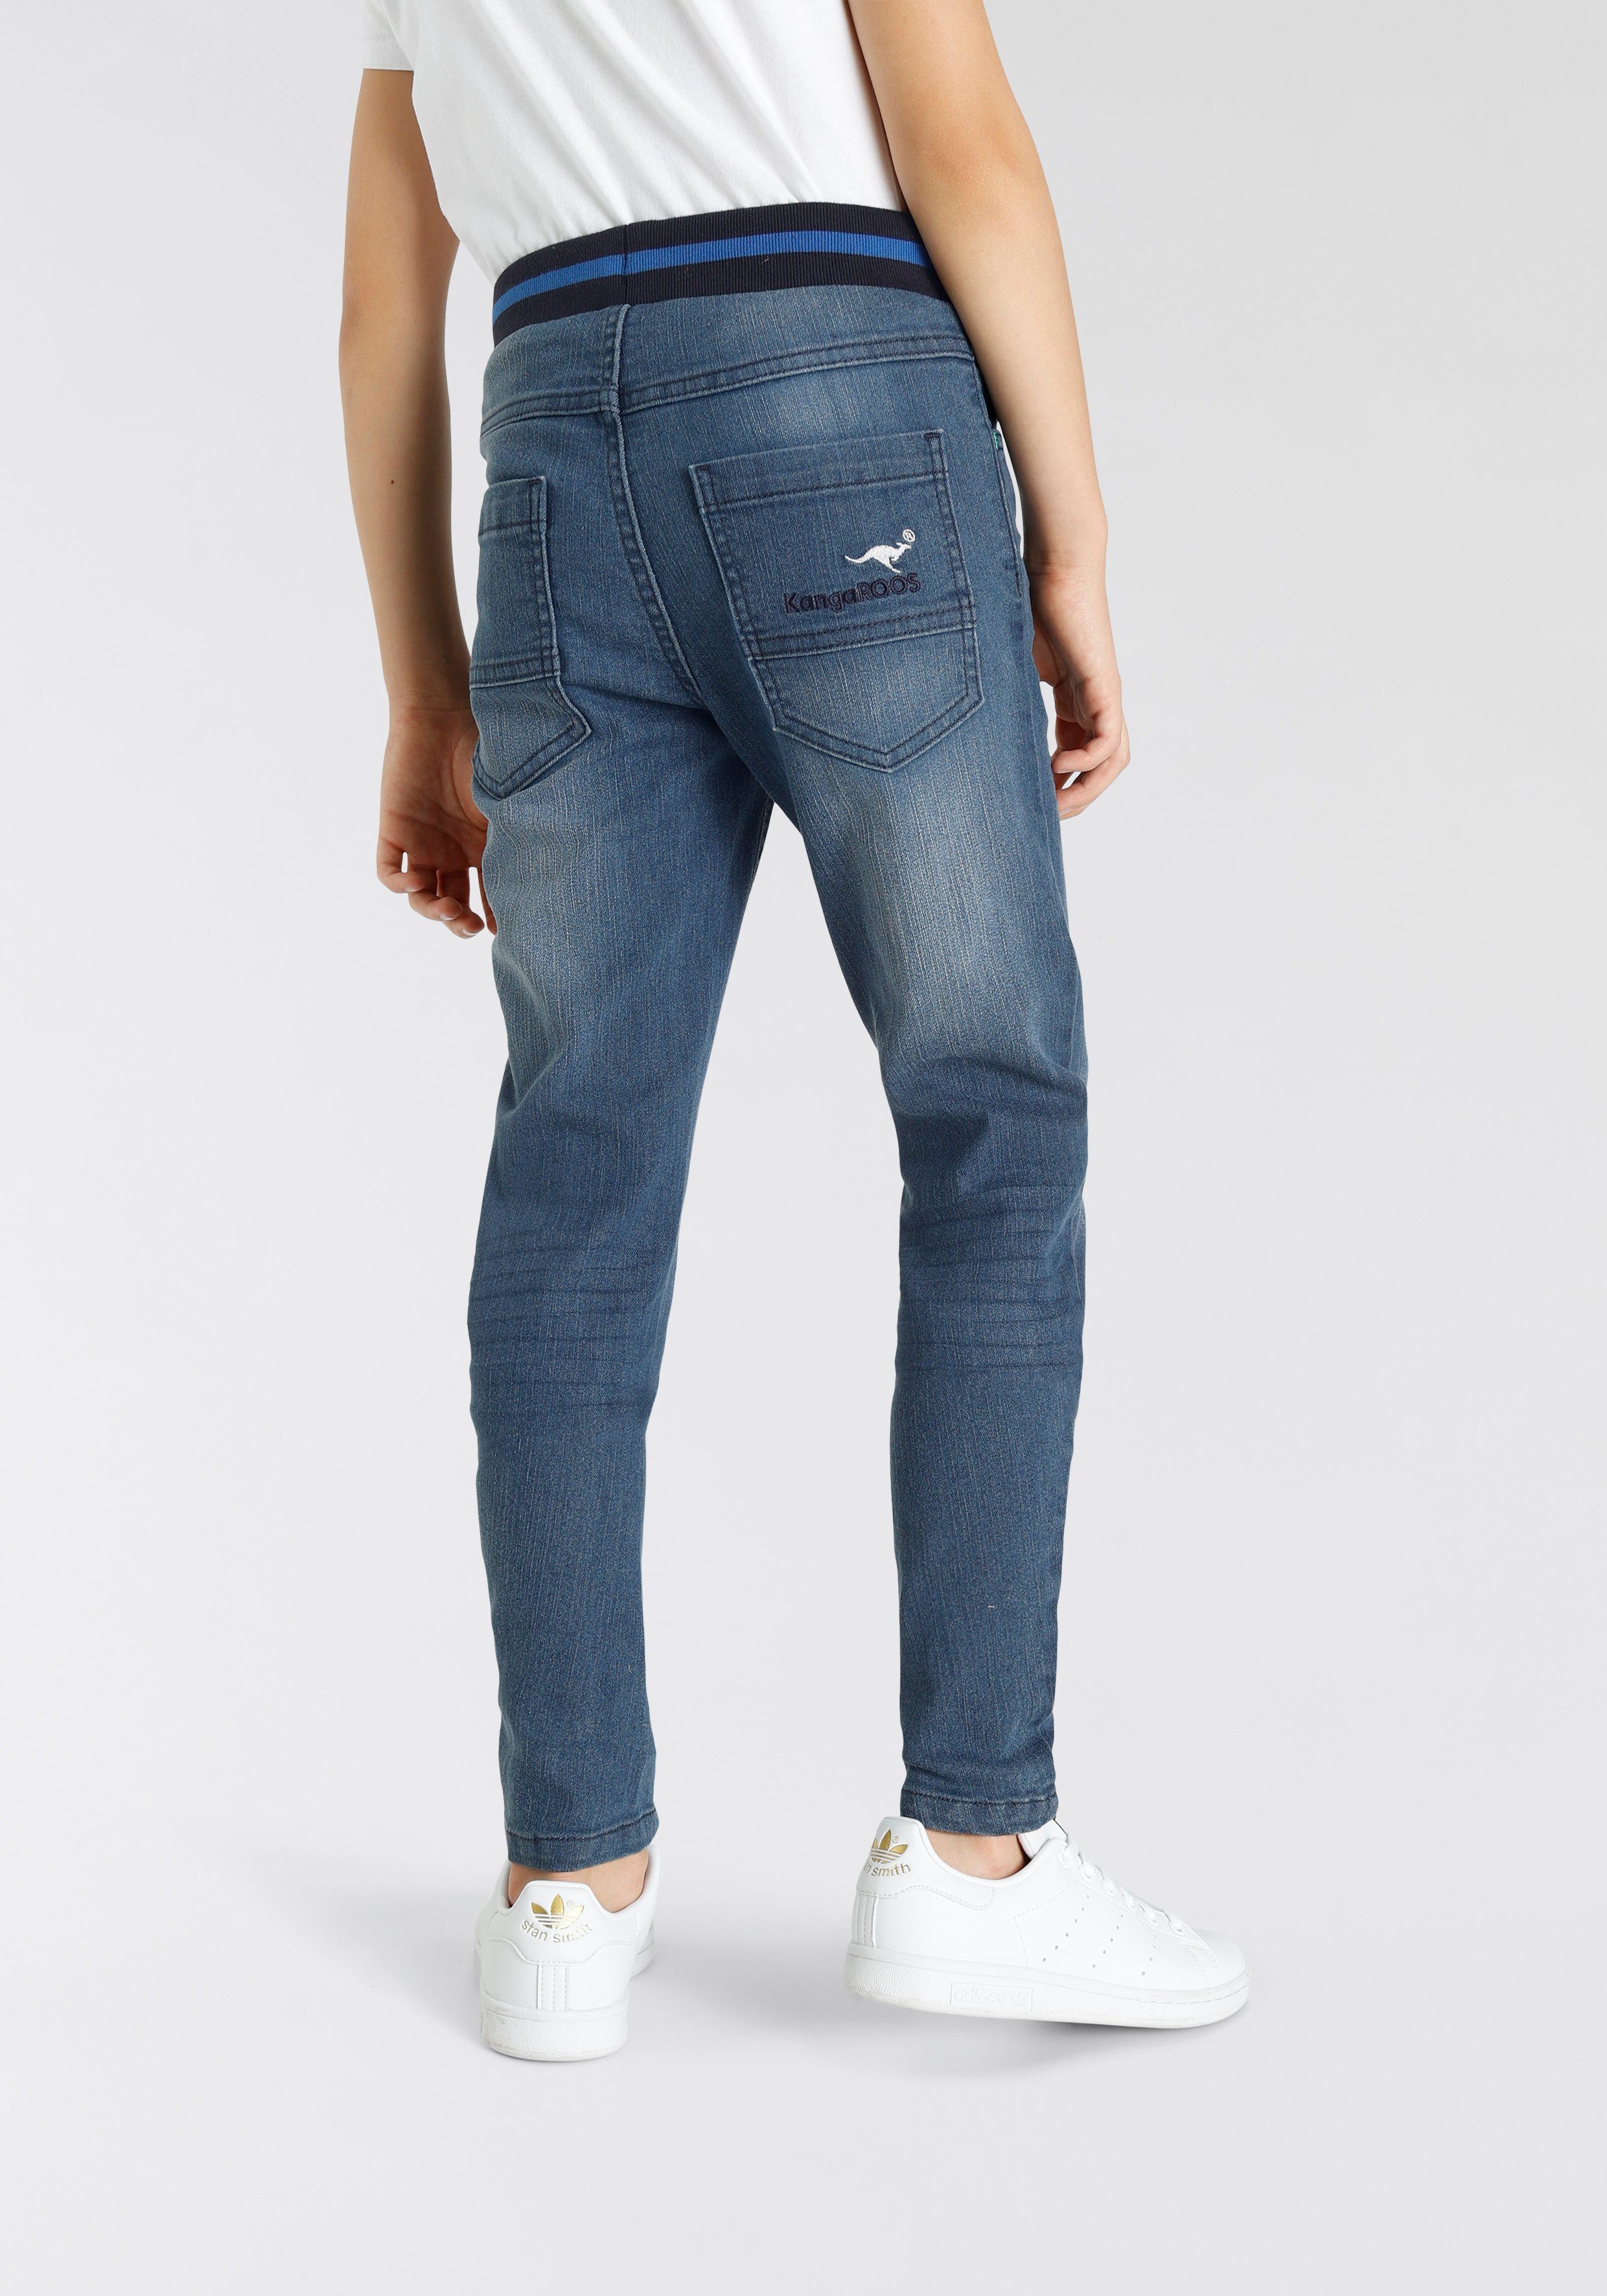 KangaROOS Stretch-Jeans in authentischer Waschung Denim